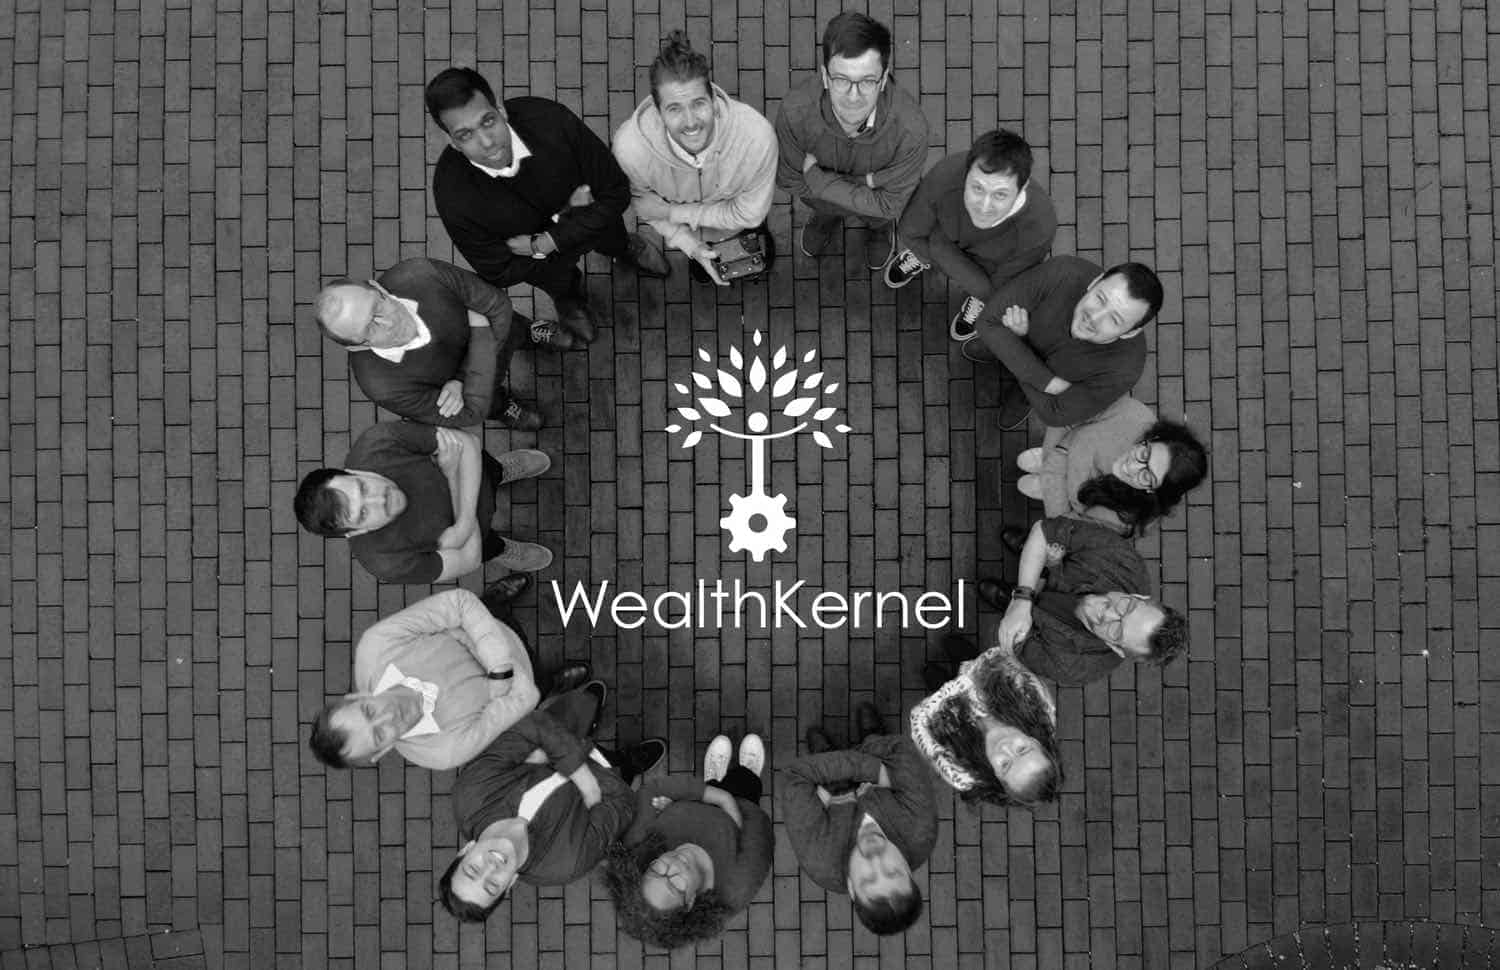 wealthkernal team